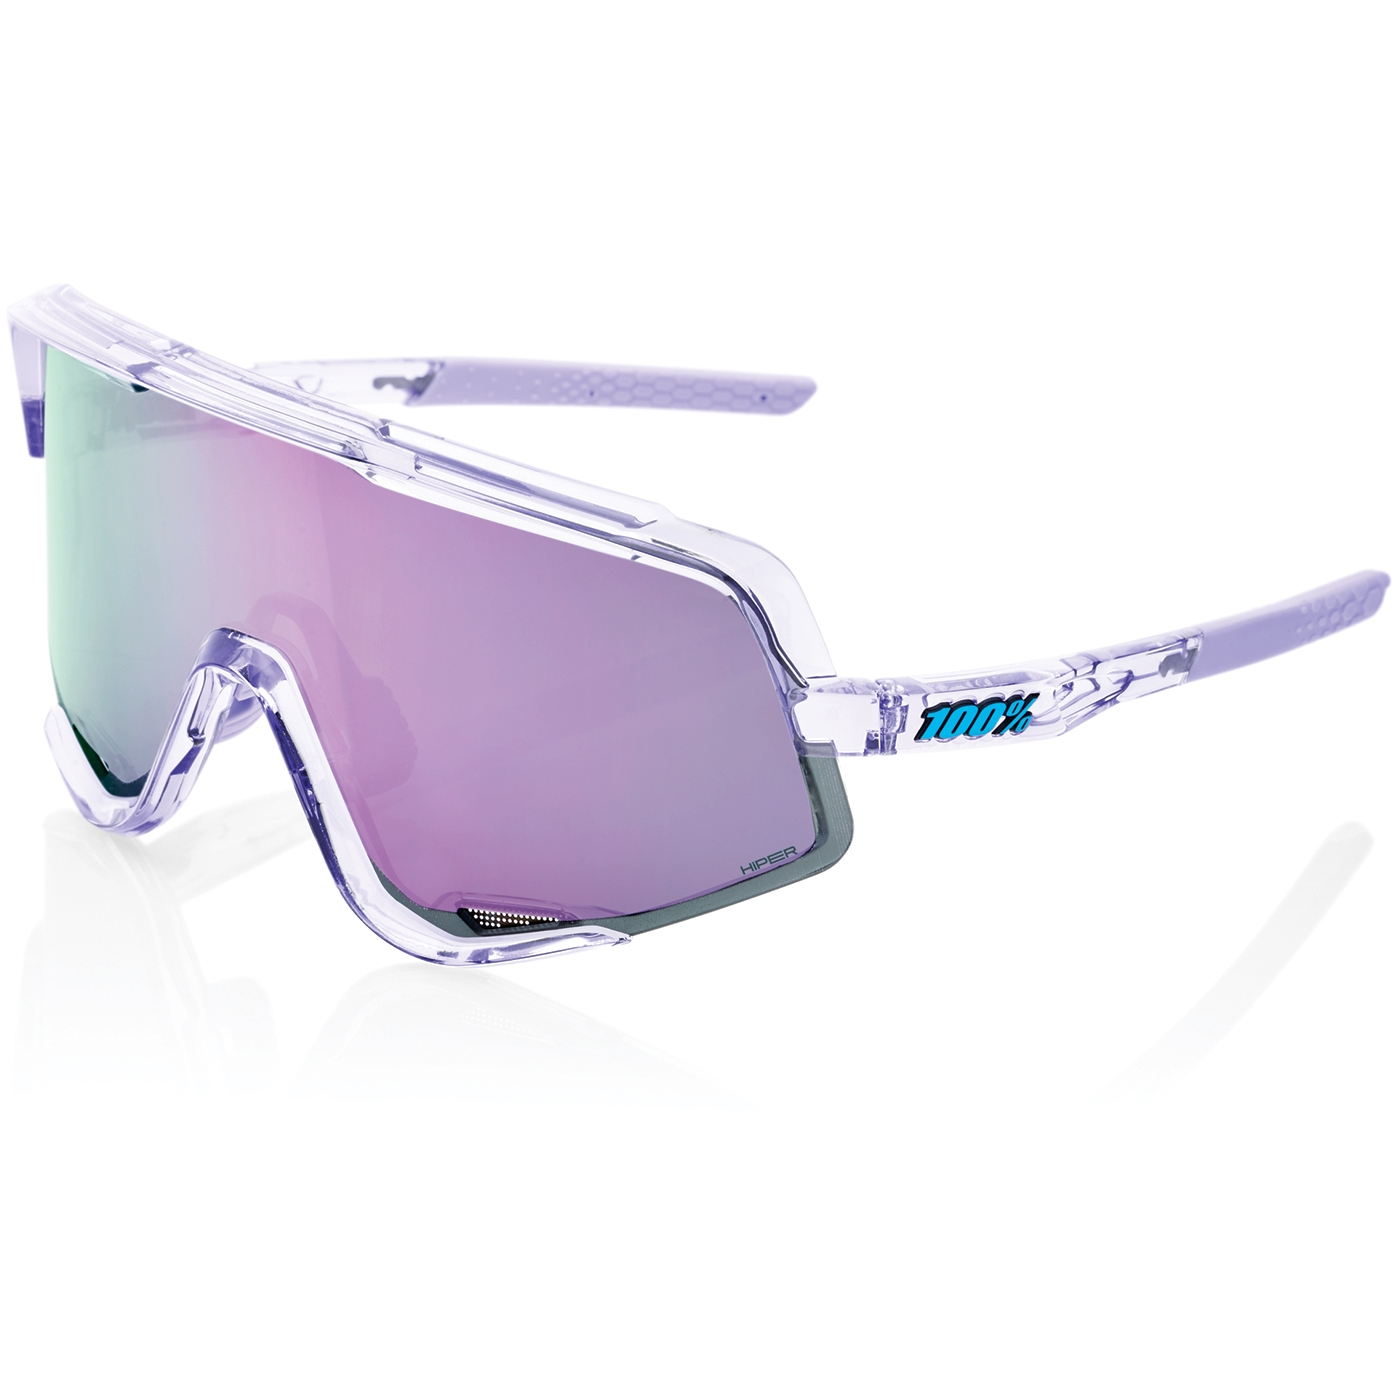 Picture of 100% Glendale Glasses - HiPER Mirror Lens - Polished Translucent Lavender / Lavender + Clear